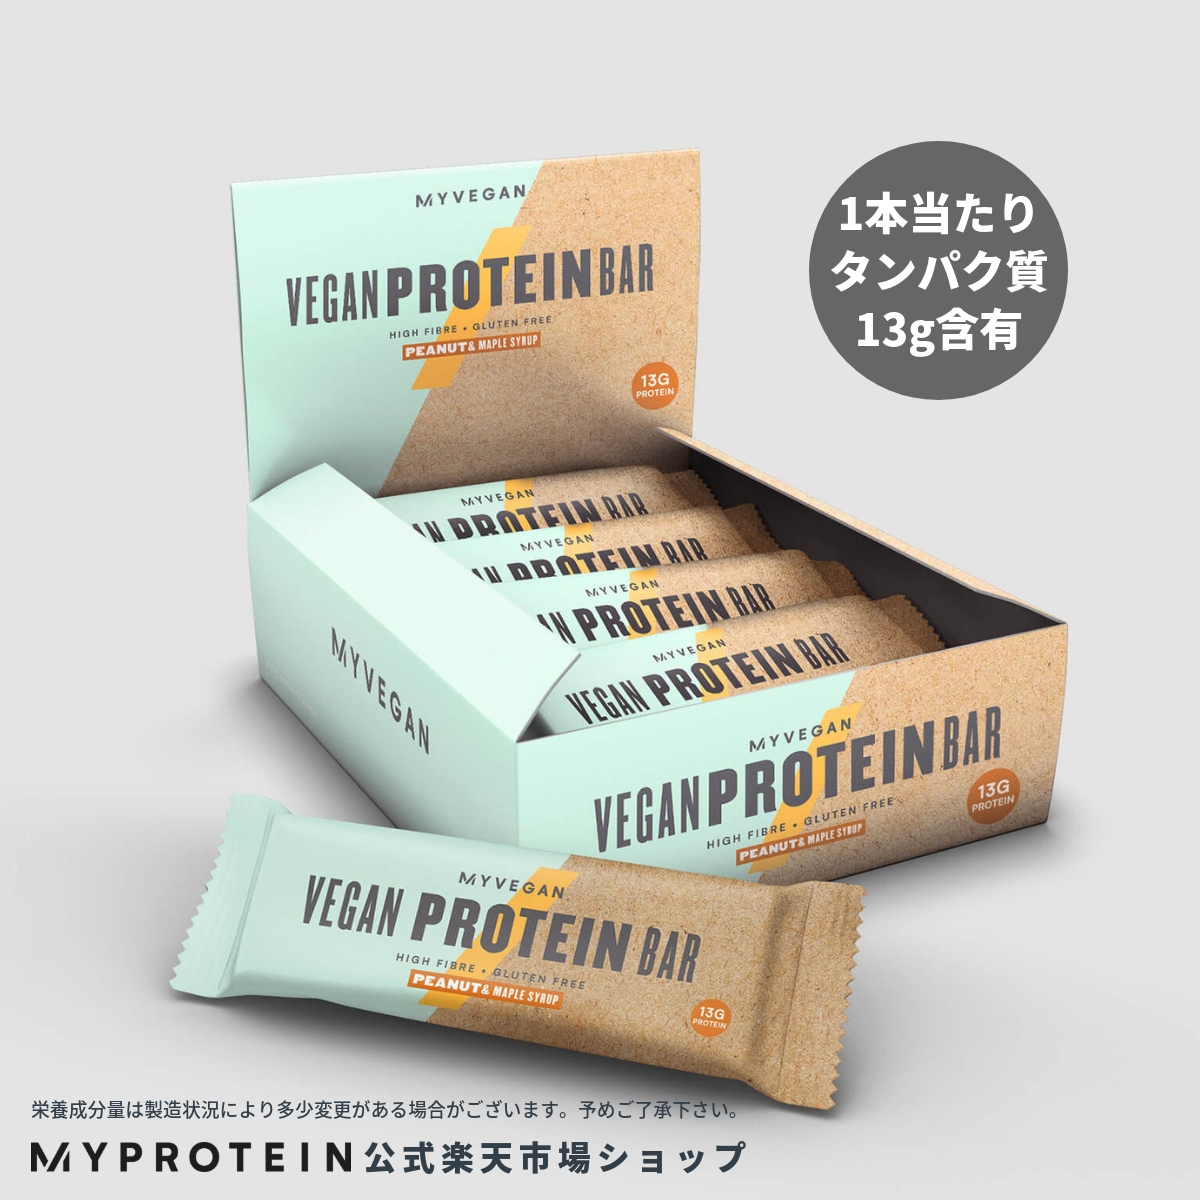 マイプロテイン 公式 【MyProtein】 ビーガン プロテインバー 18本入